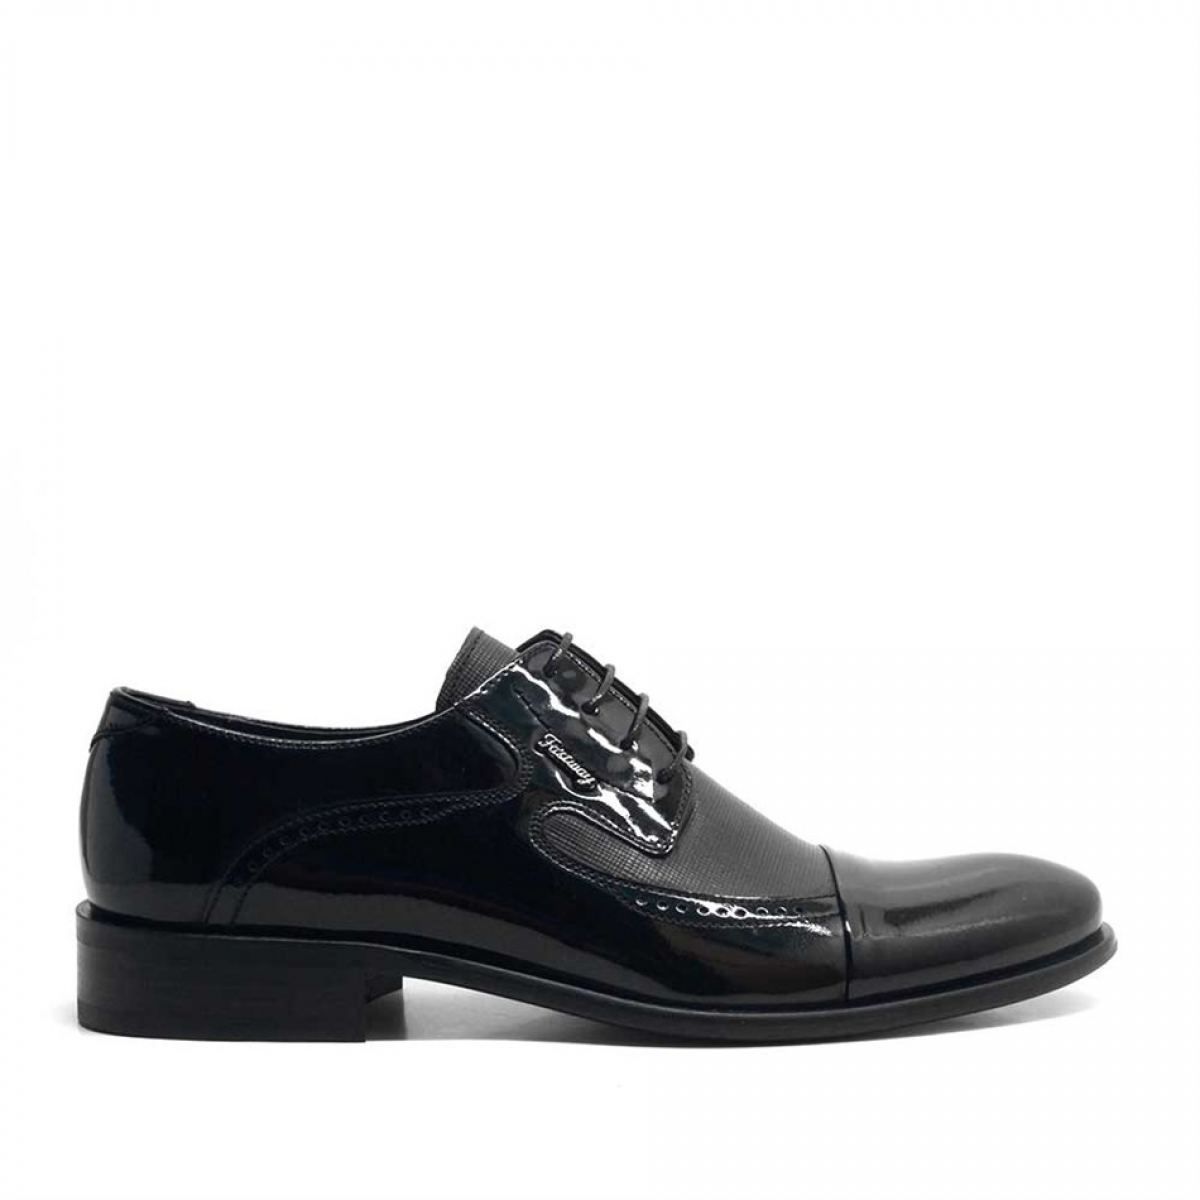 Flo Hakiki Deri Siyah Rugan Bağcıklı Klasik Erkek Ayakkabı. 2